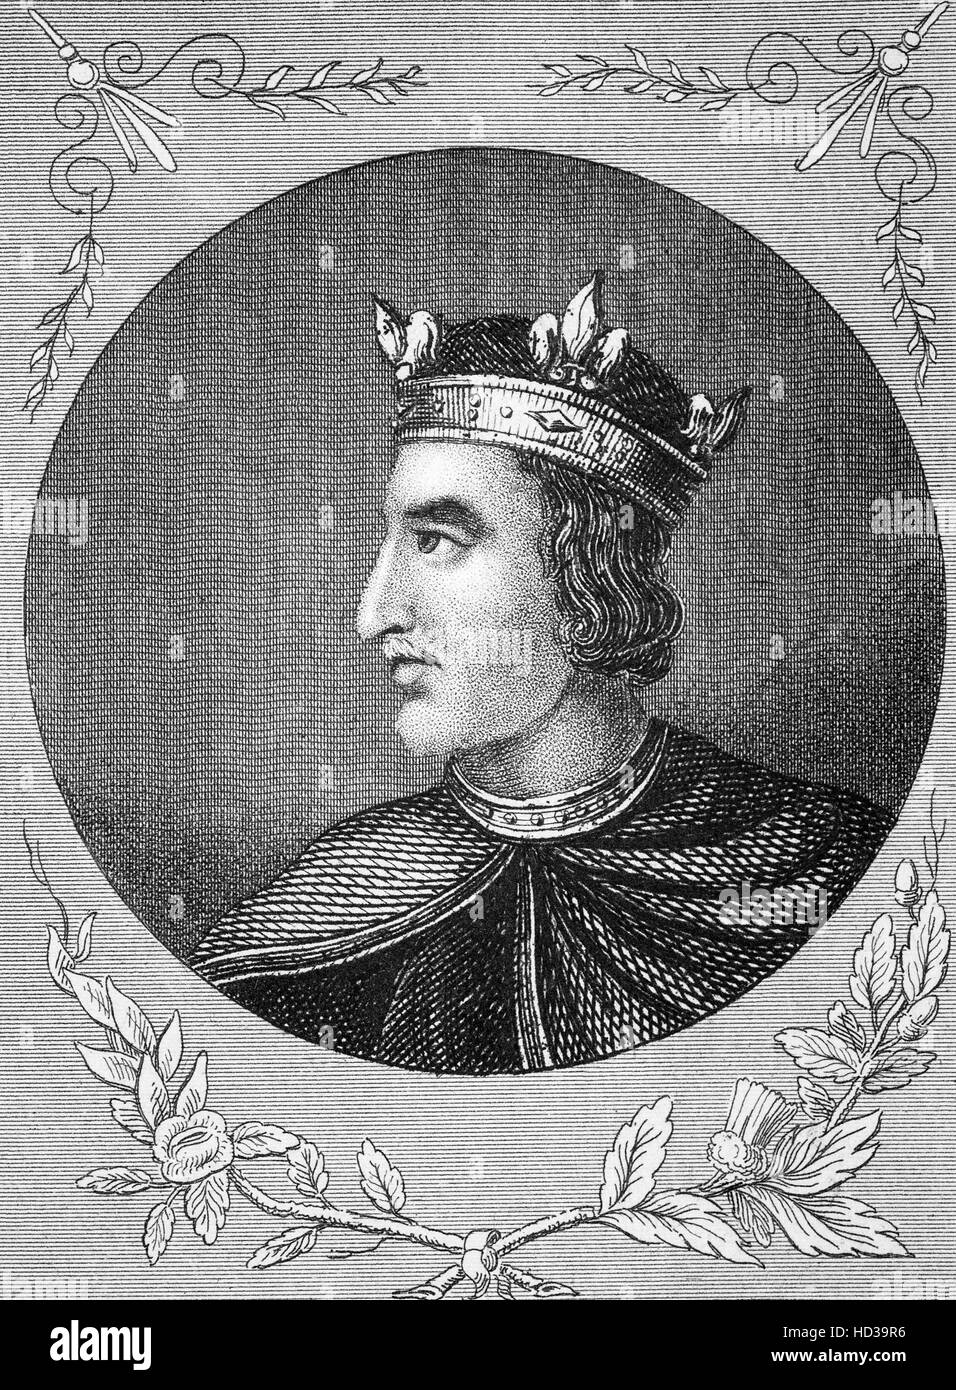 Enrique I (1068 - 1135), también conocido como Henry Beauclerc, fue Rey de Inglaterra desde 1100 hasta su muerte. Fue el cuarto hijo de Guillermo el Conquistador y fue educado en latín y las artes liberales. Foto de stock